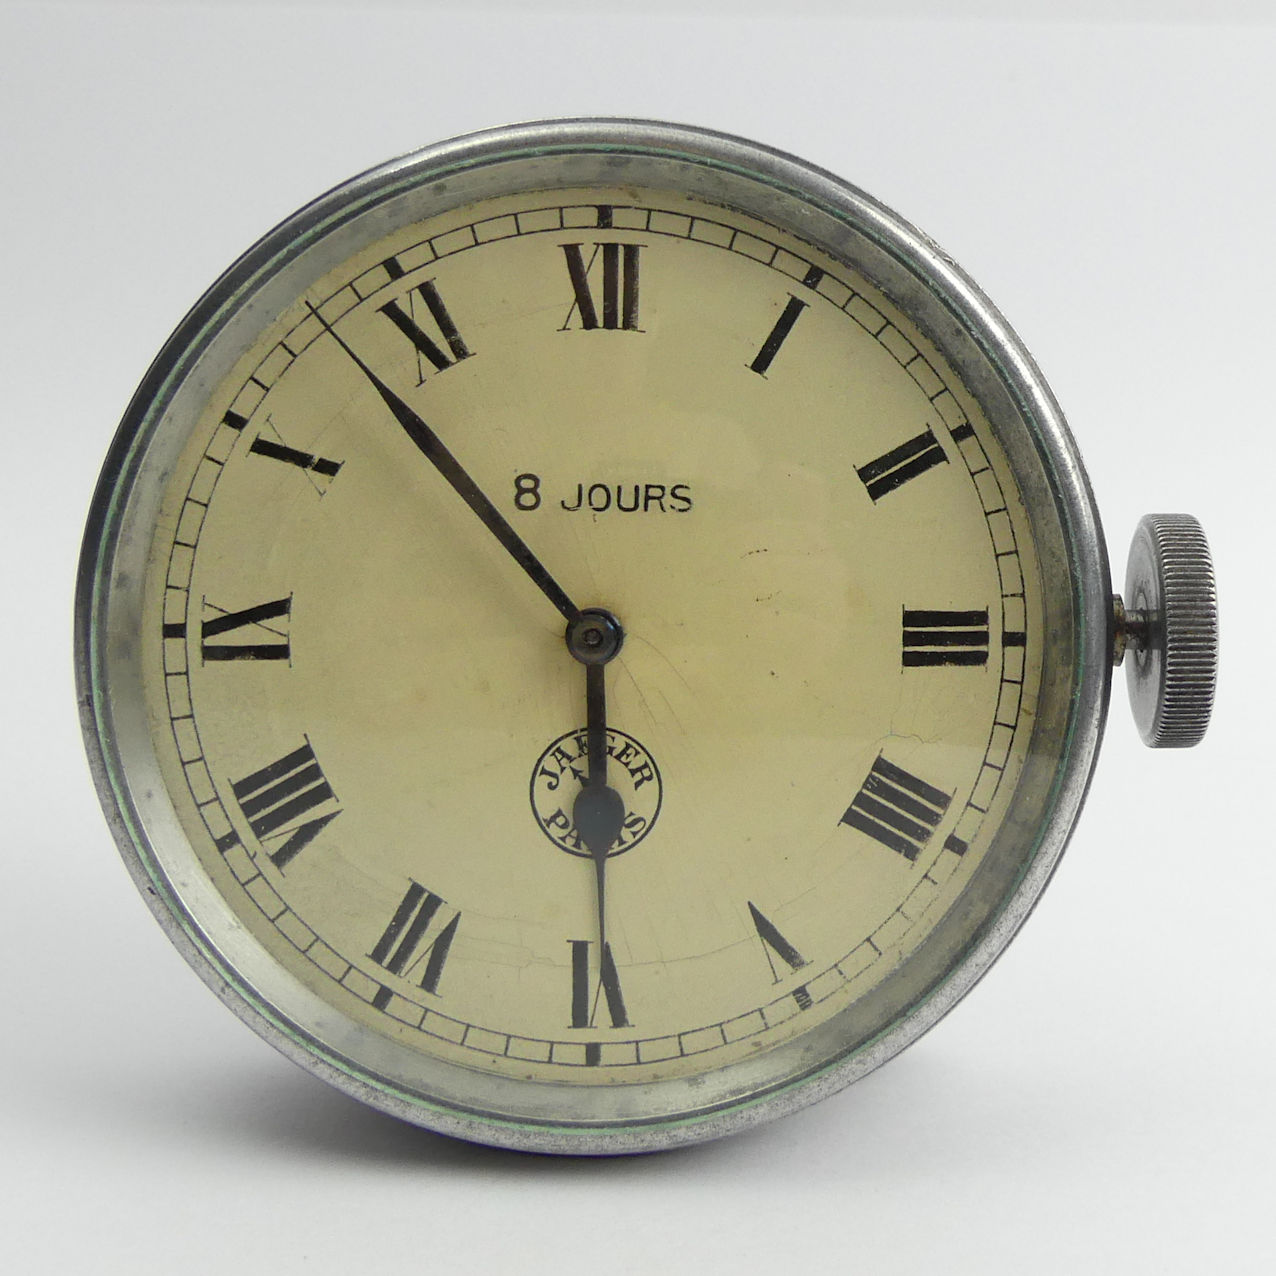 World War II Jaeger Paris 8 Jours clock with mounts, 84mm in diameter. Condition